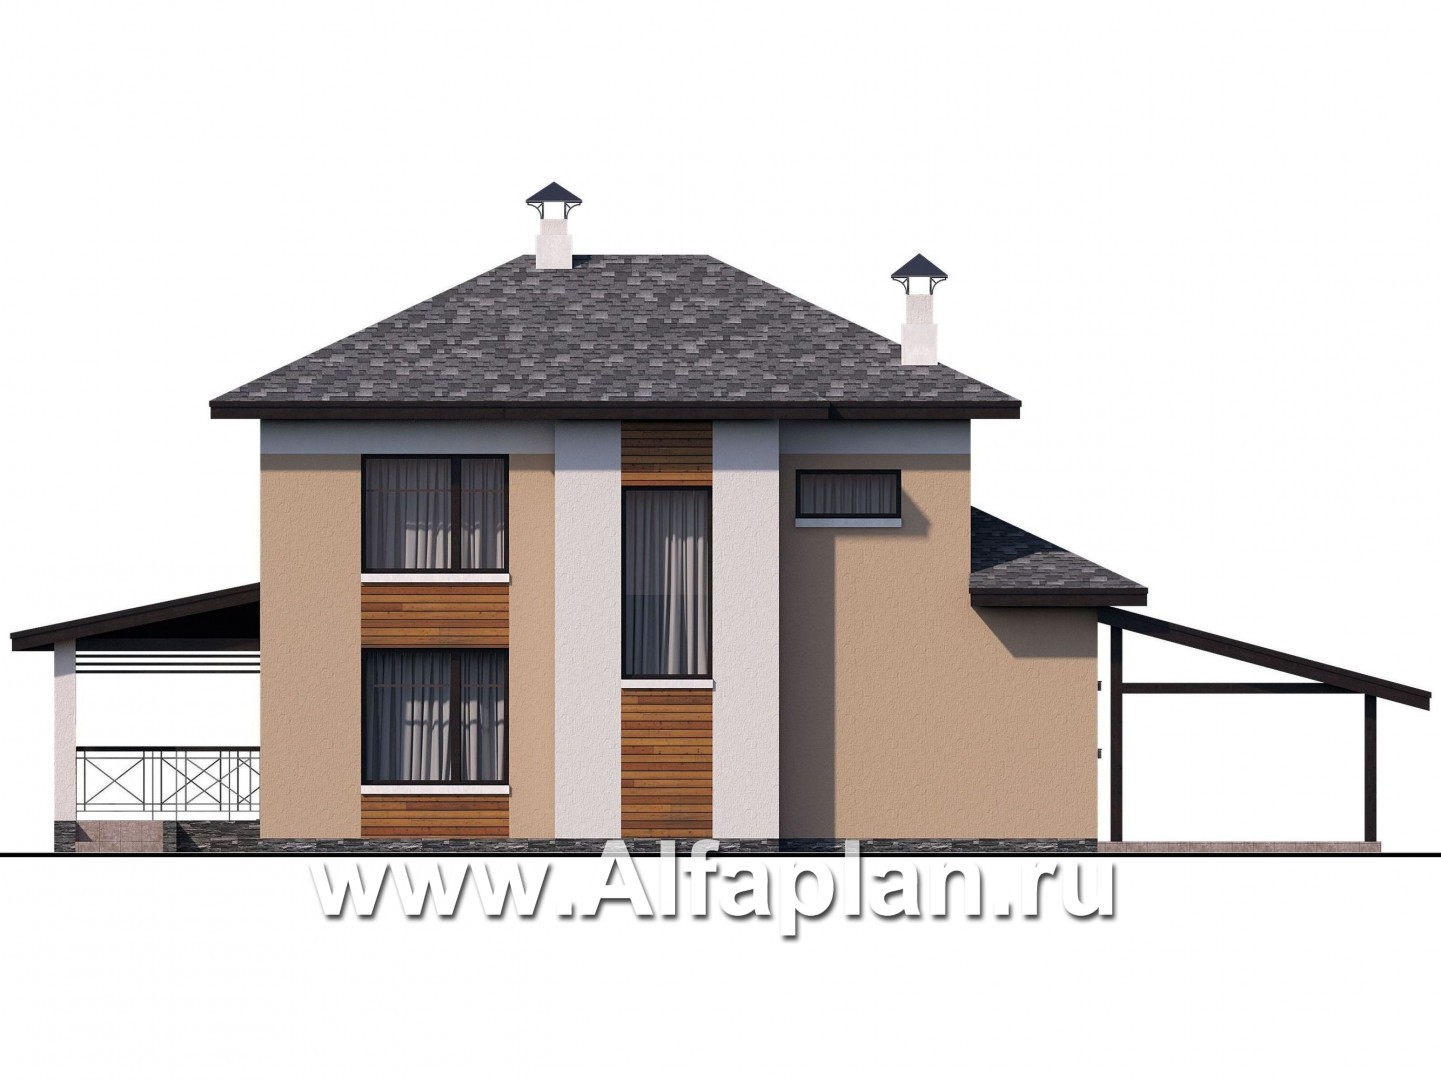 «Стимул» - проект двухэтажного дома с угловой террасой, планировка с кабинетом на 1 эт, в современном стиле, с навесом на 1 авто - фасад дома